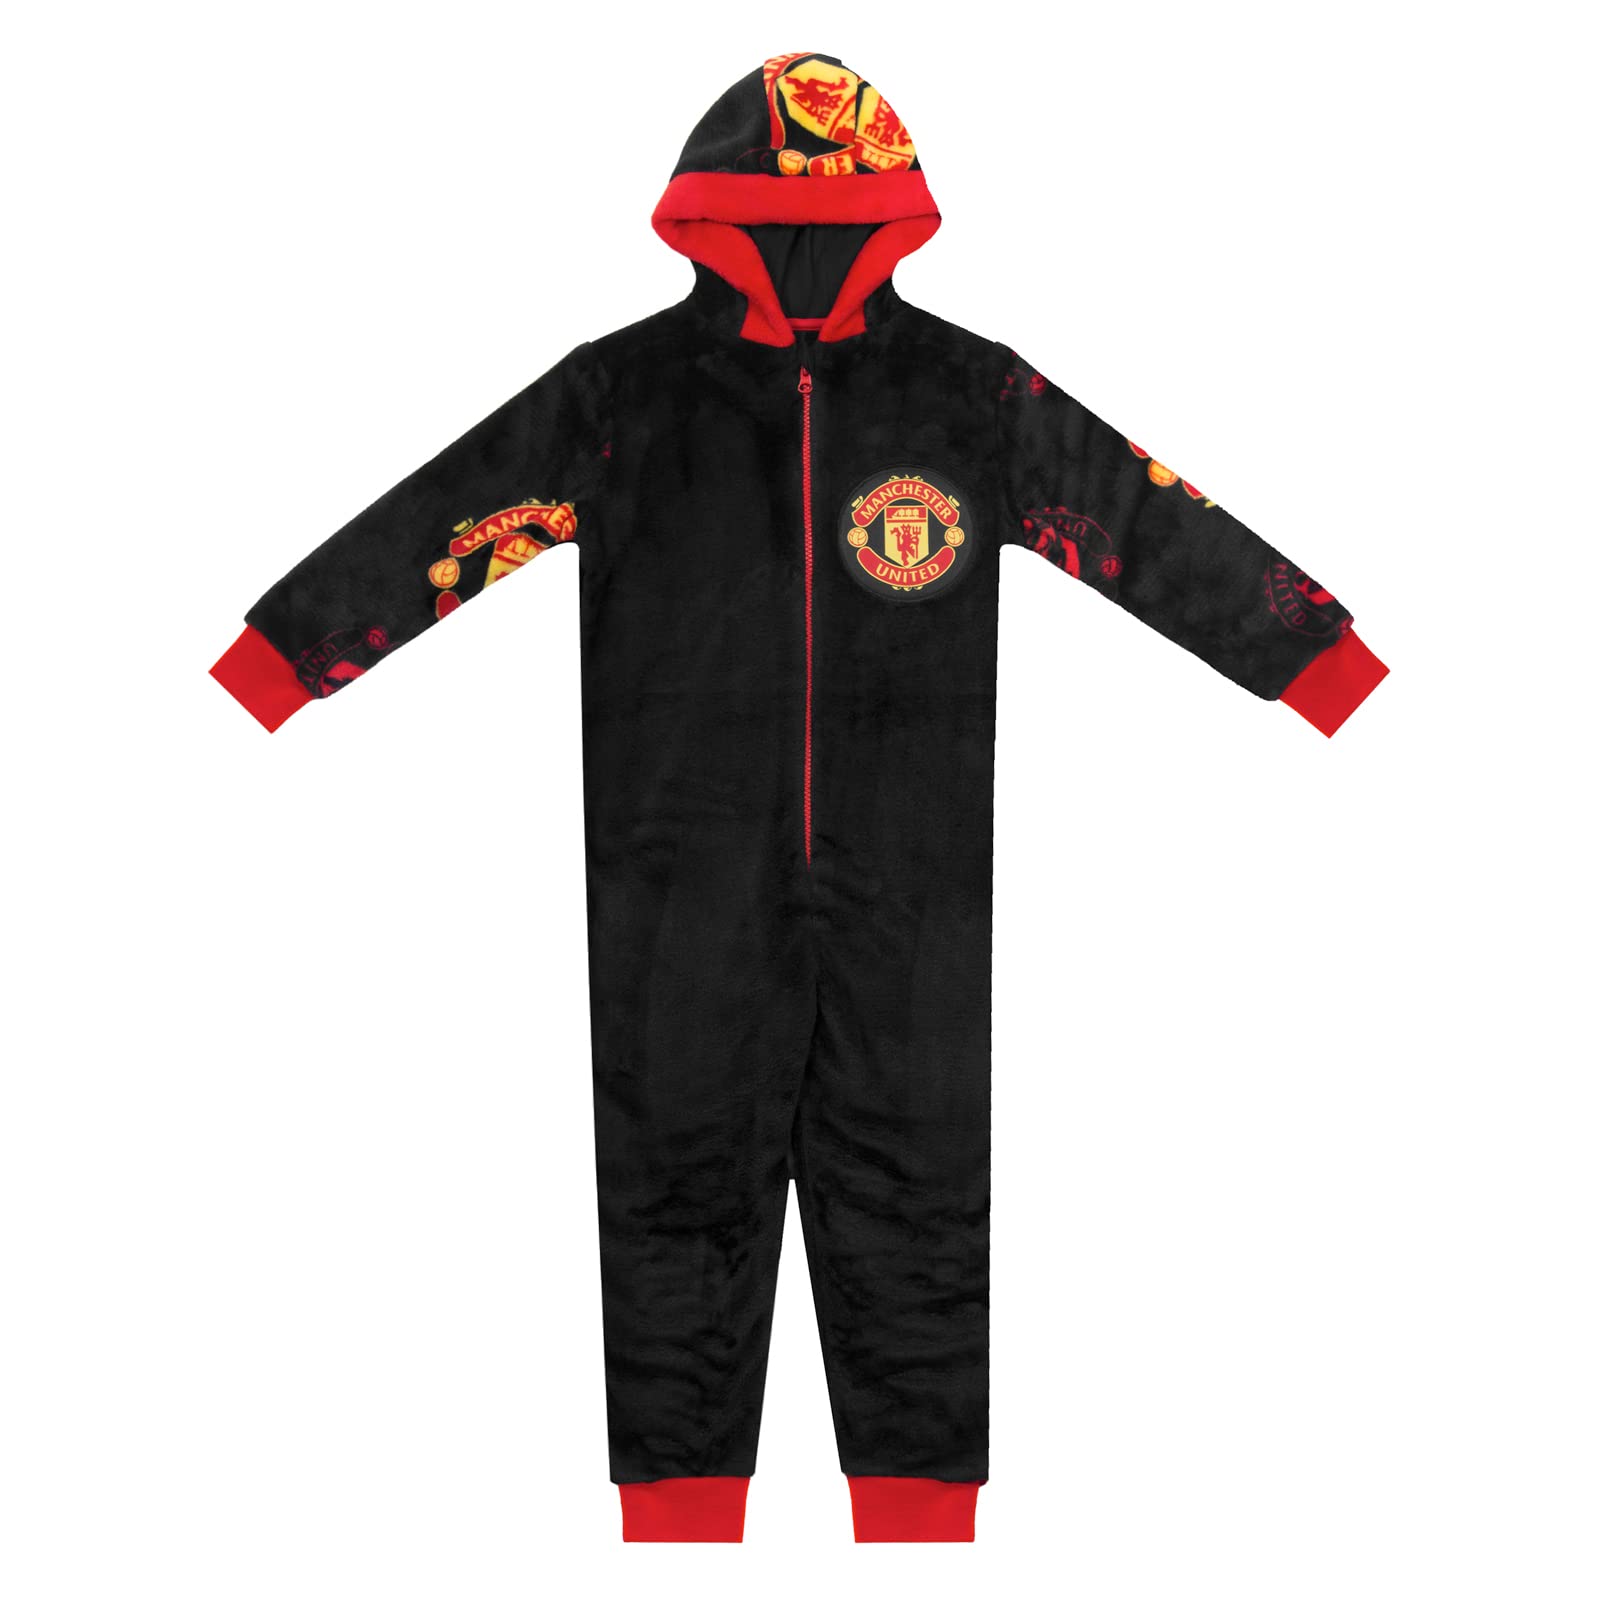 Manchester United FC - Jungen Schlafanzug-Einteiler aus Fleece - Offizielles Merchandise - Geschenk für Fußballfans - 8-9 Jahre